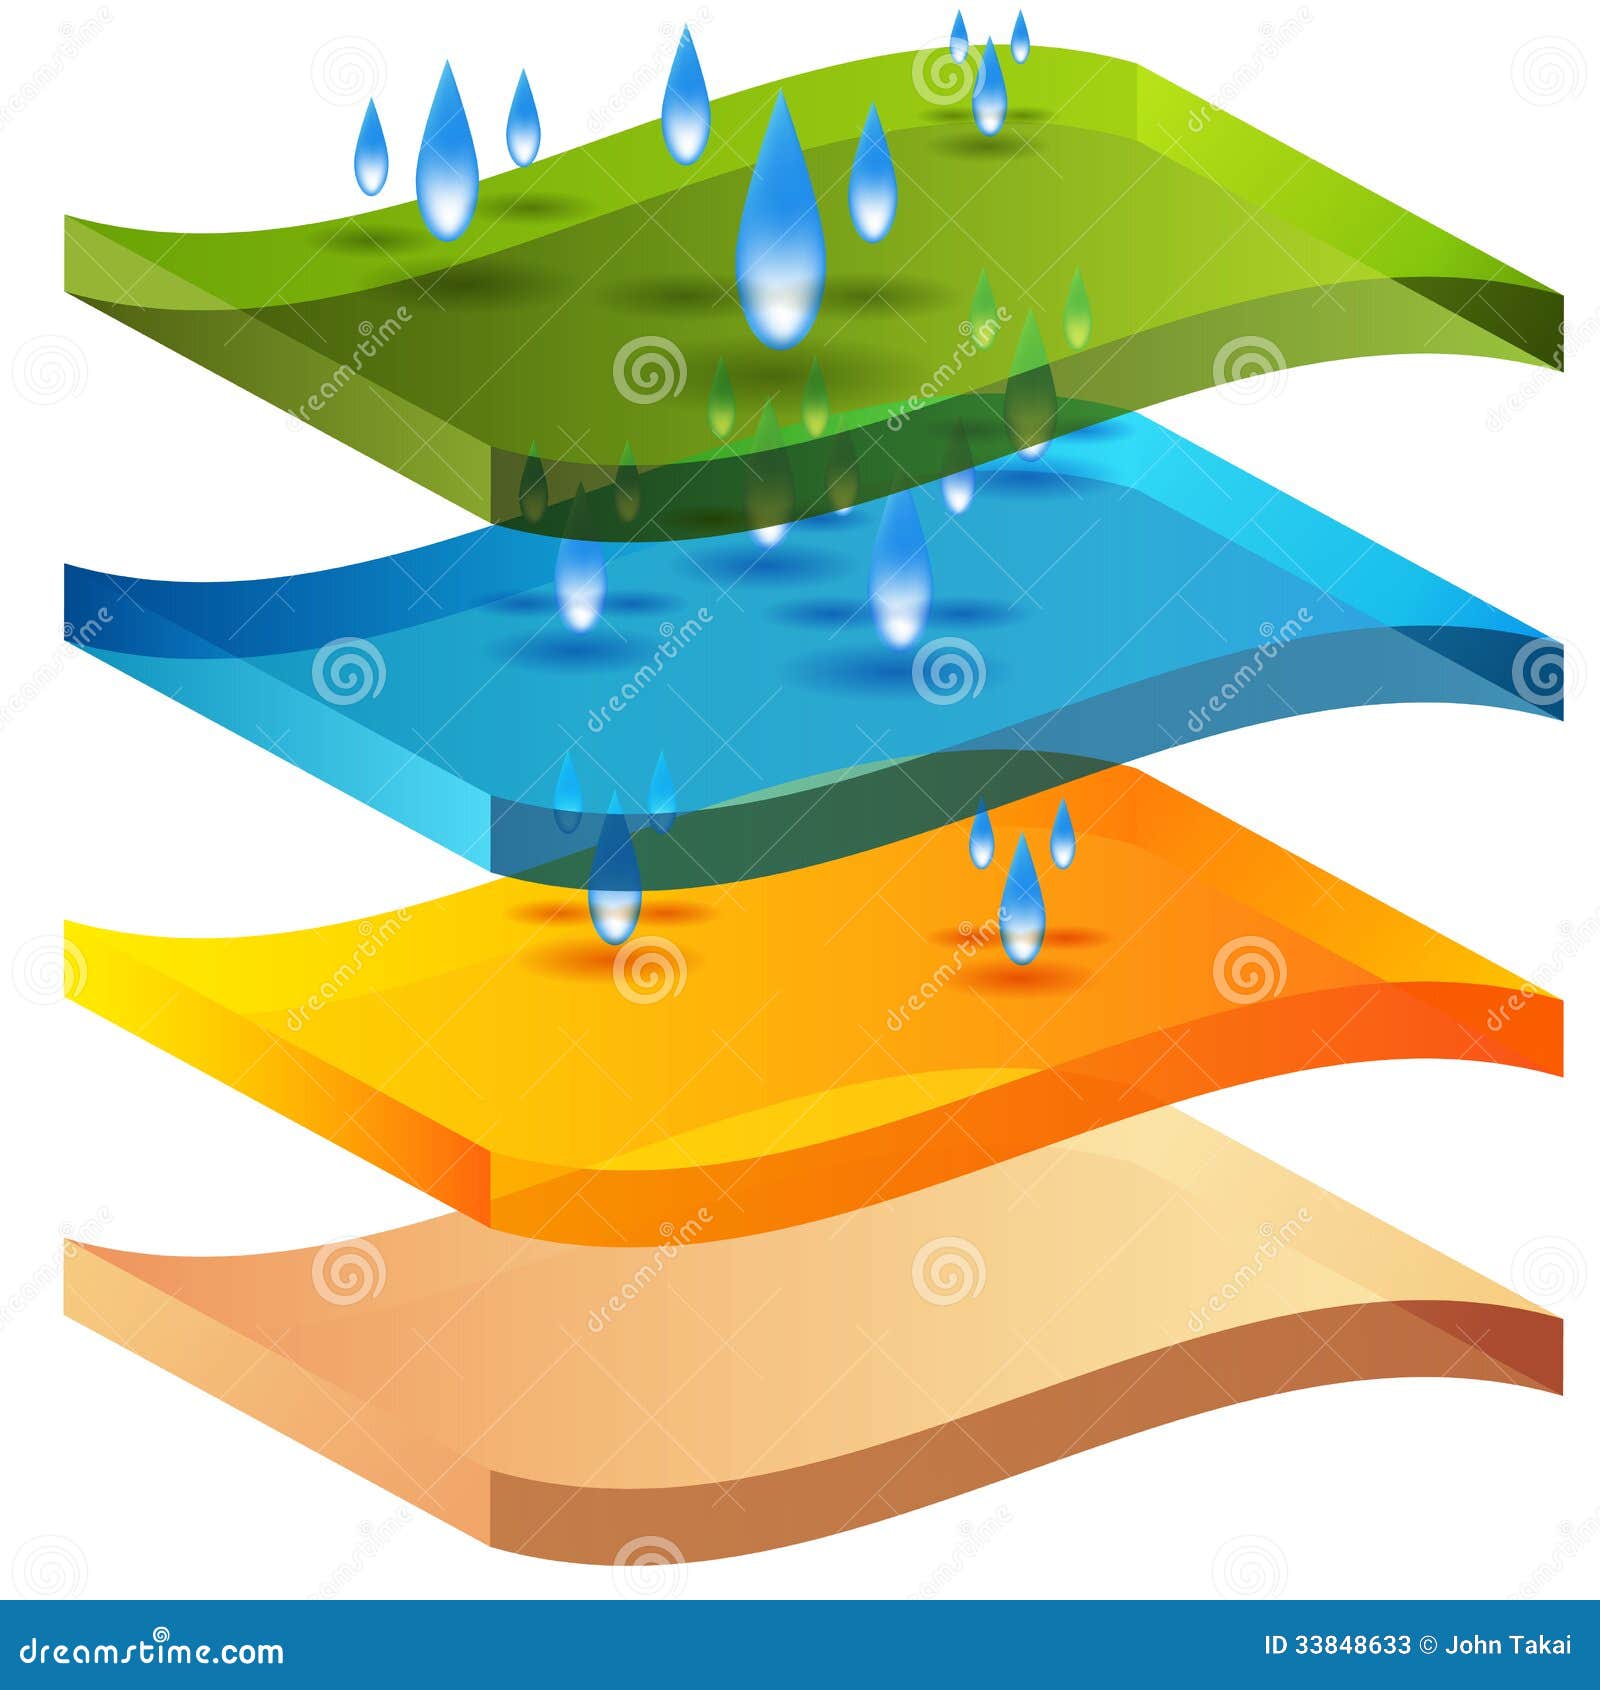 3d moisture barrier chart